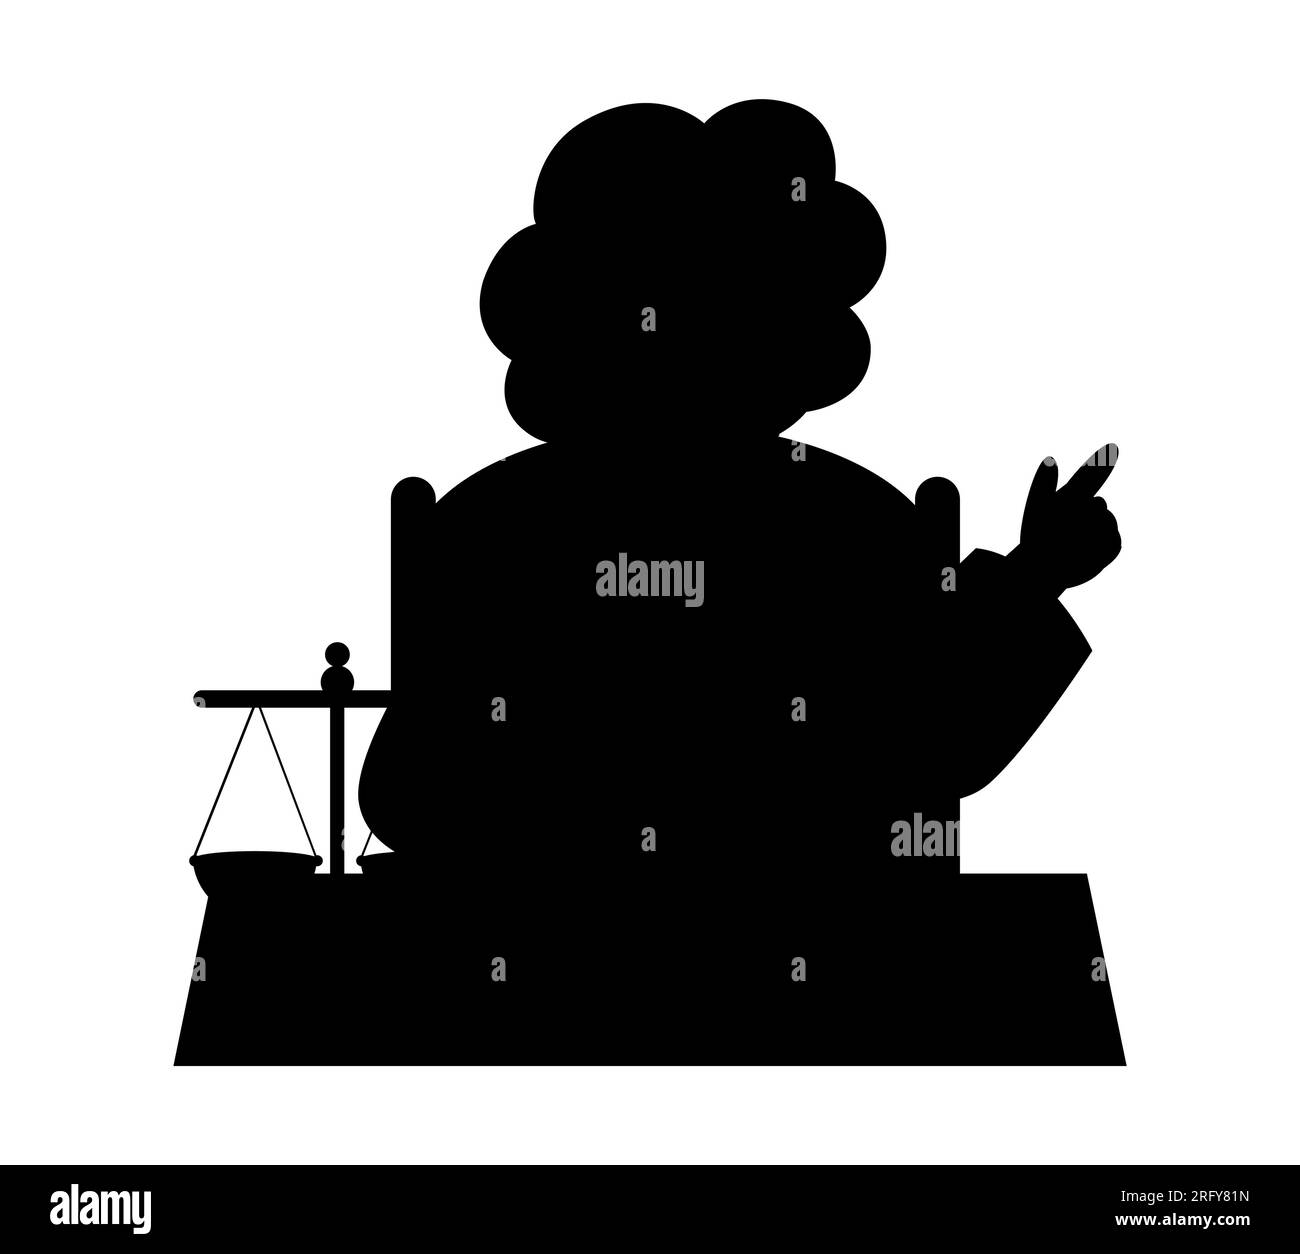 La silhouette nera di un giudice donna, una donna in veste e con un martelletto si siede e ascolta le discussioni alle feste. Giurisprudenza e concetto legislativo, ve Illustrazione Vettoriale